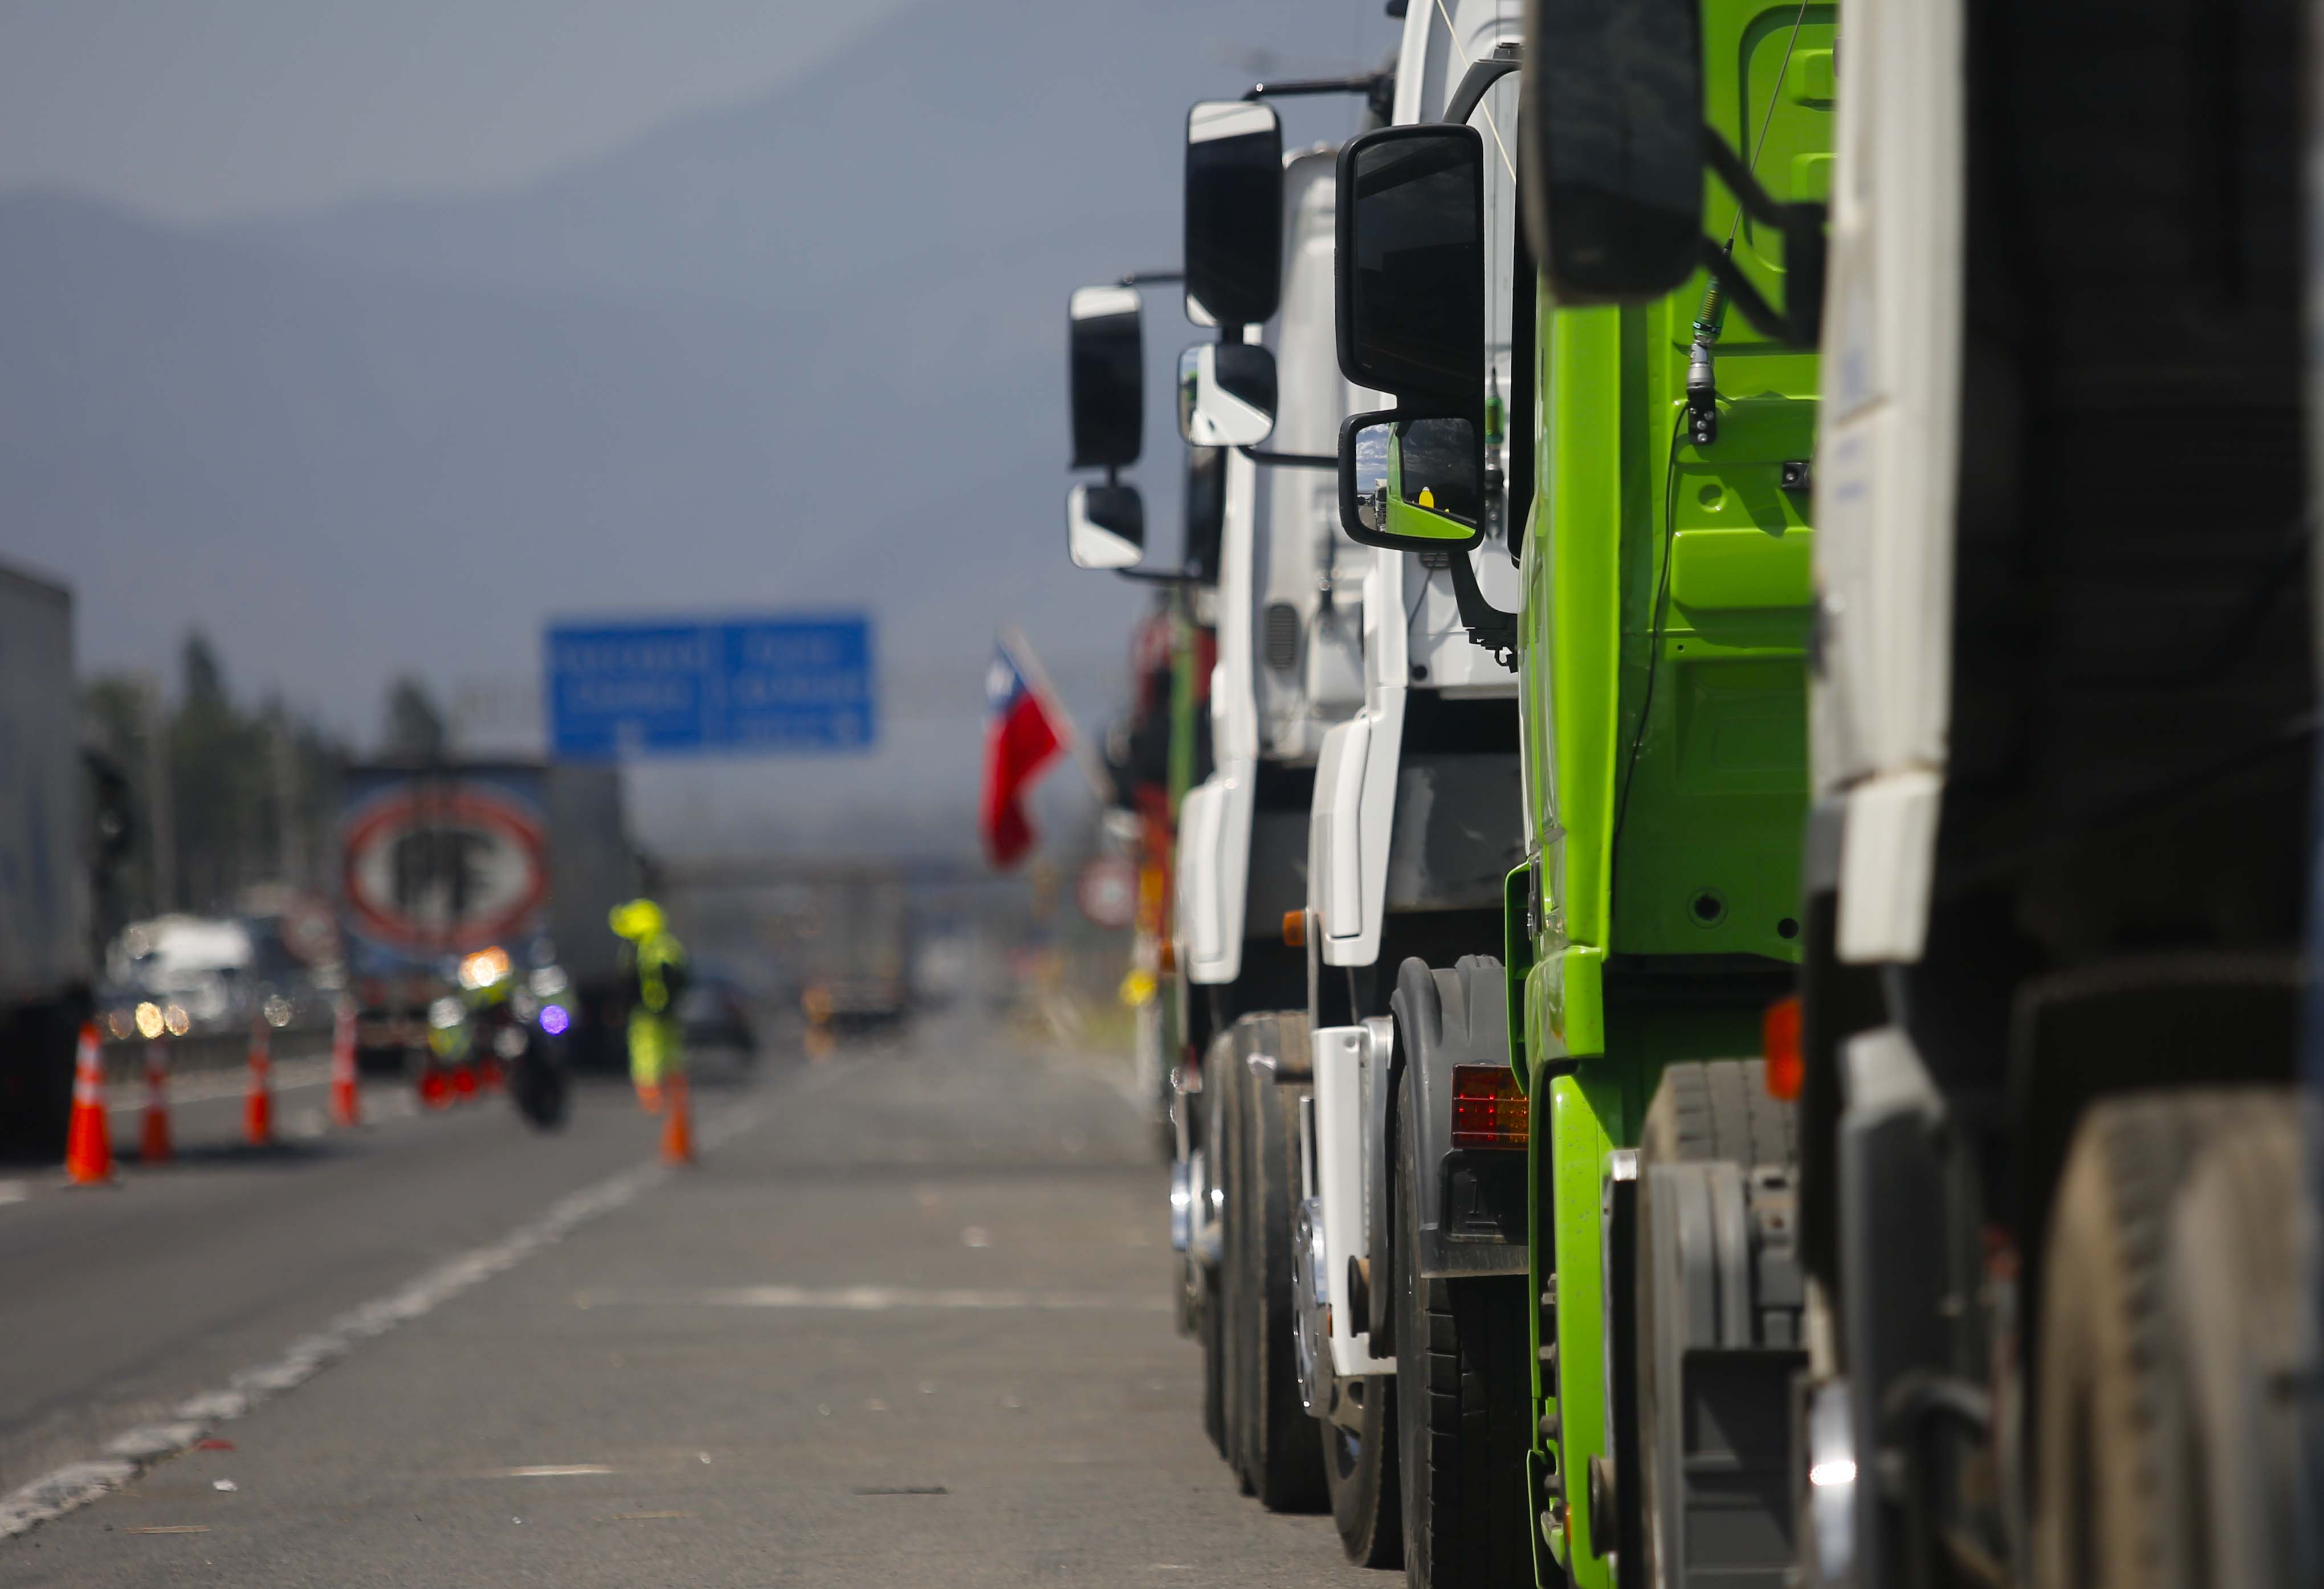 Santiago 25 de noviembre del 2022 
Camioneros en paro por quinto día y estacionan en bermas de carreteras en protesta por alza de combustibles y Seguridad ,en la foto km 41 ruta 5 sur en comuna de Paine.
Juan Eduardo Lopez/Aton Chile